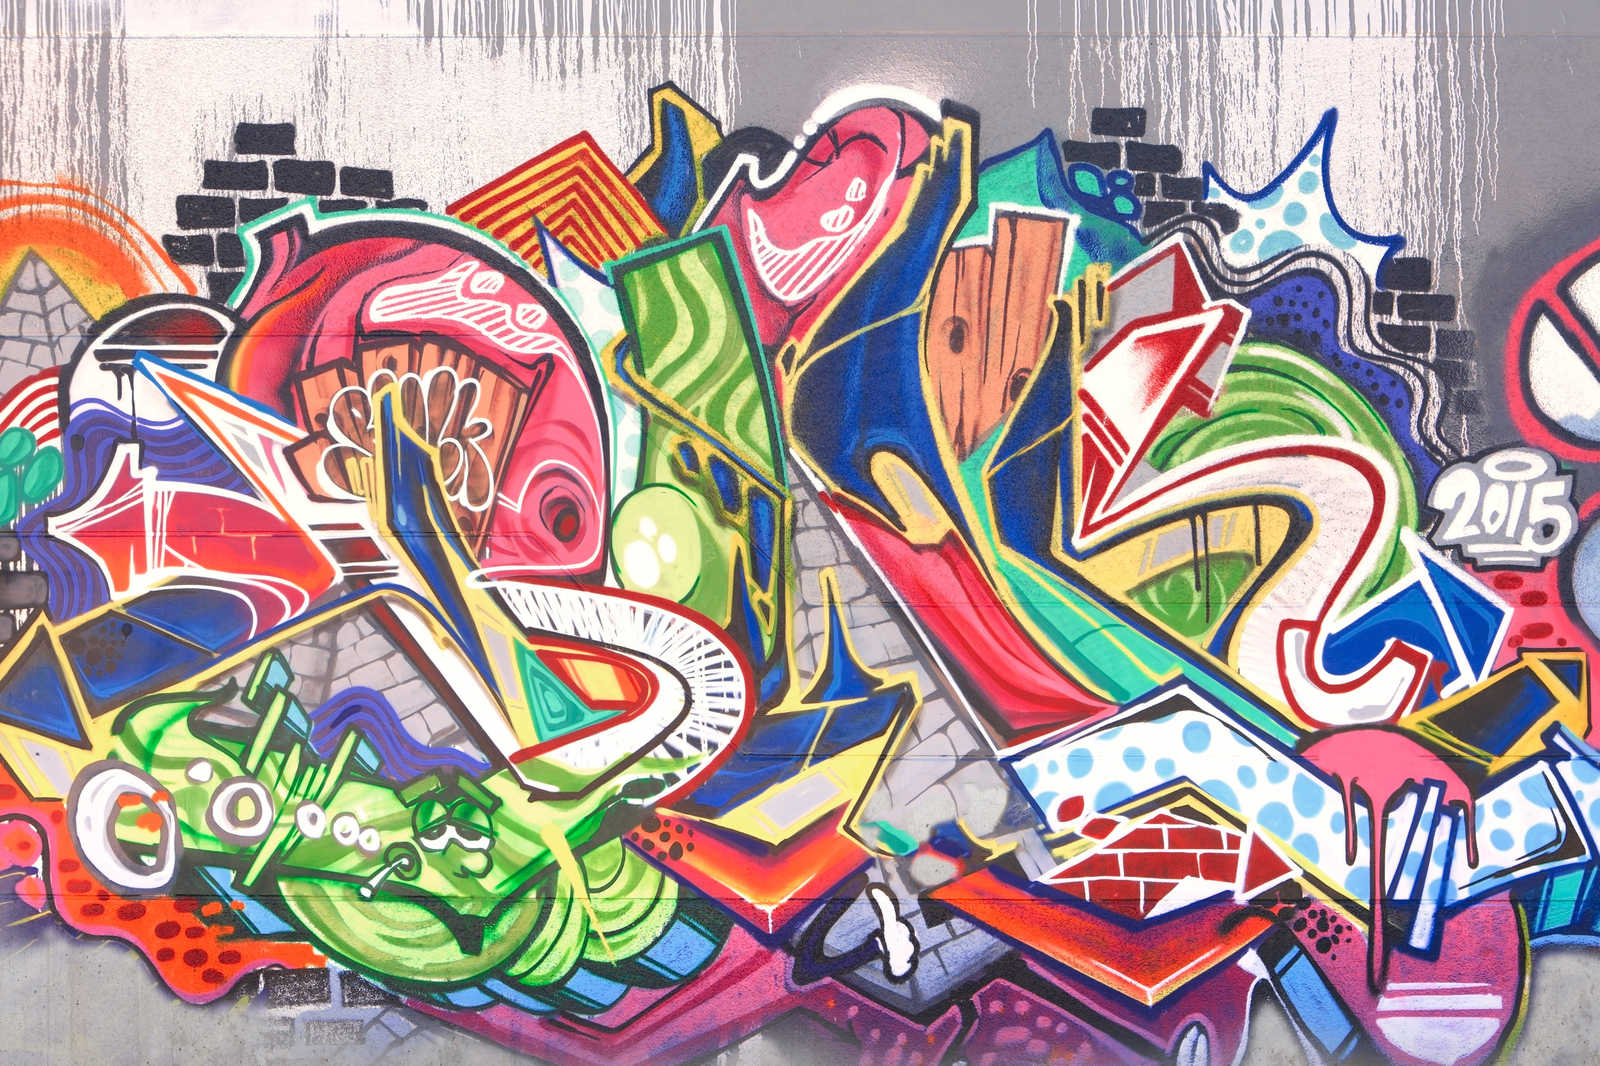             Lienzo de pared Graffiti urbano - 0,90 m x 0,60 m
        